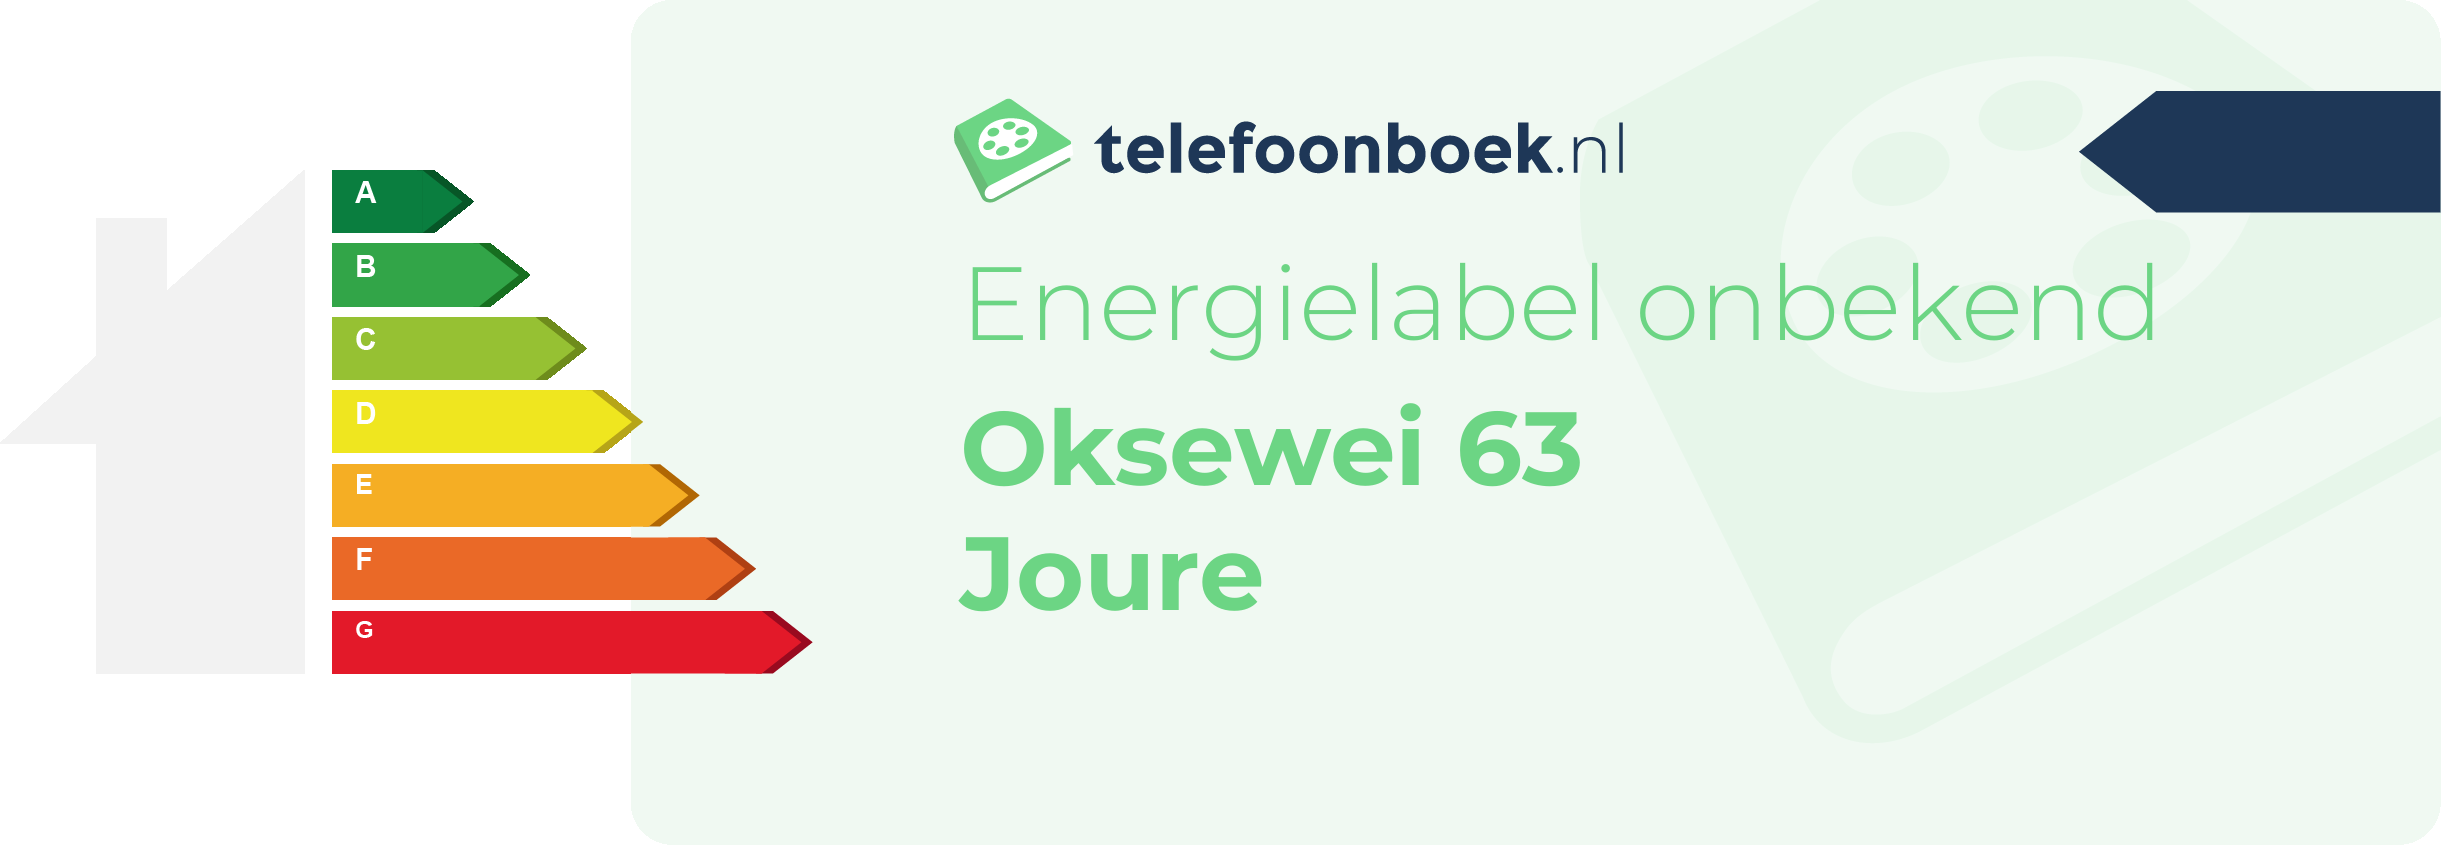 Energielabel Oksewei 63 Joure